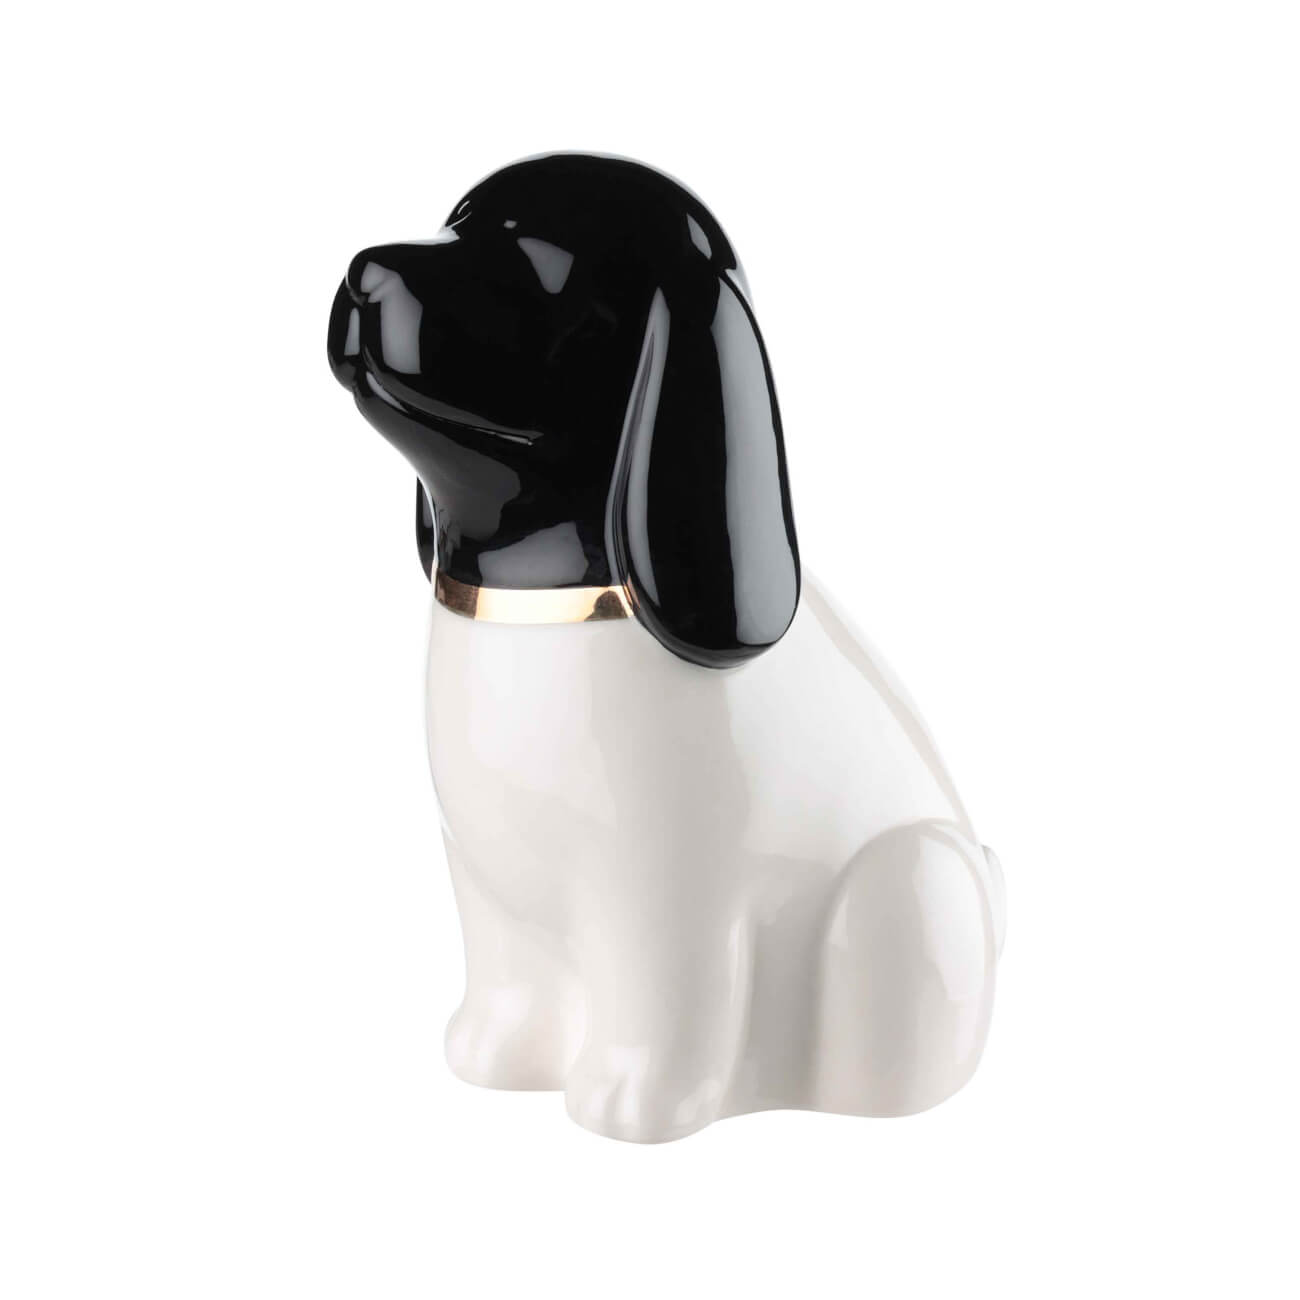 Статуэтка, 12 см, керамика, черно-белая, Собака, B&W статуэтка оскар керамика